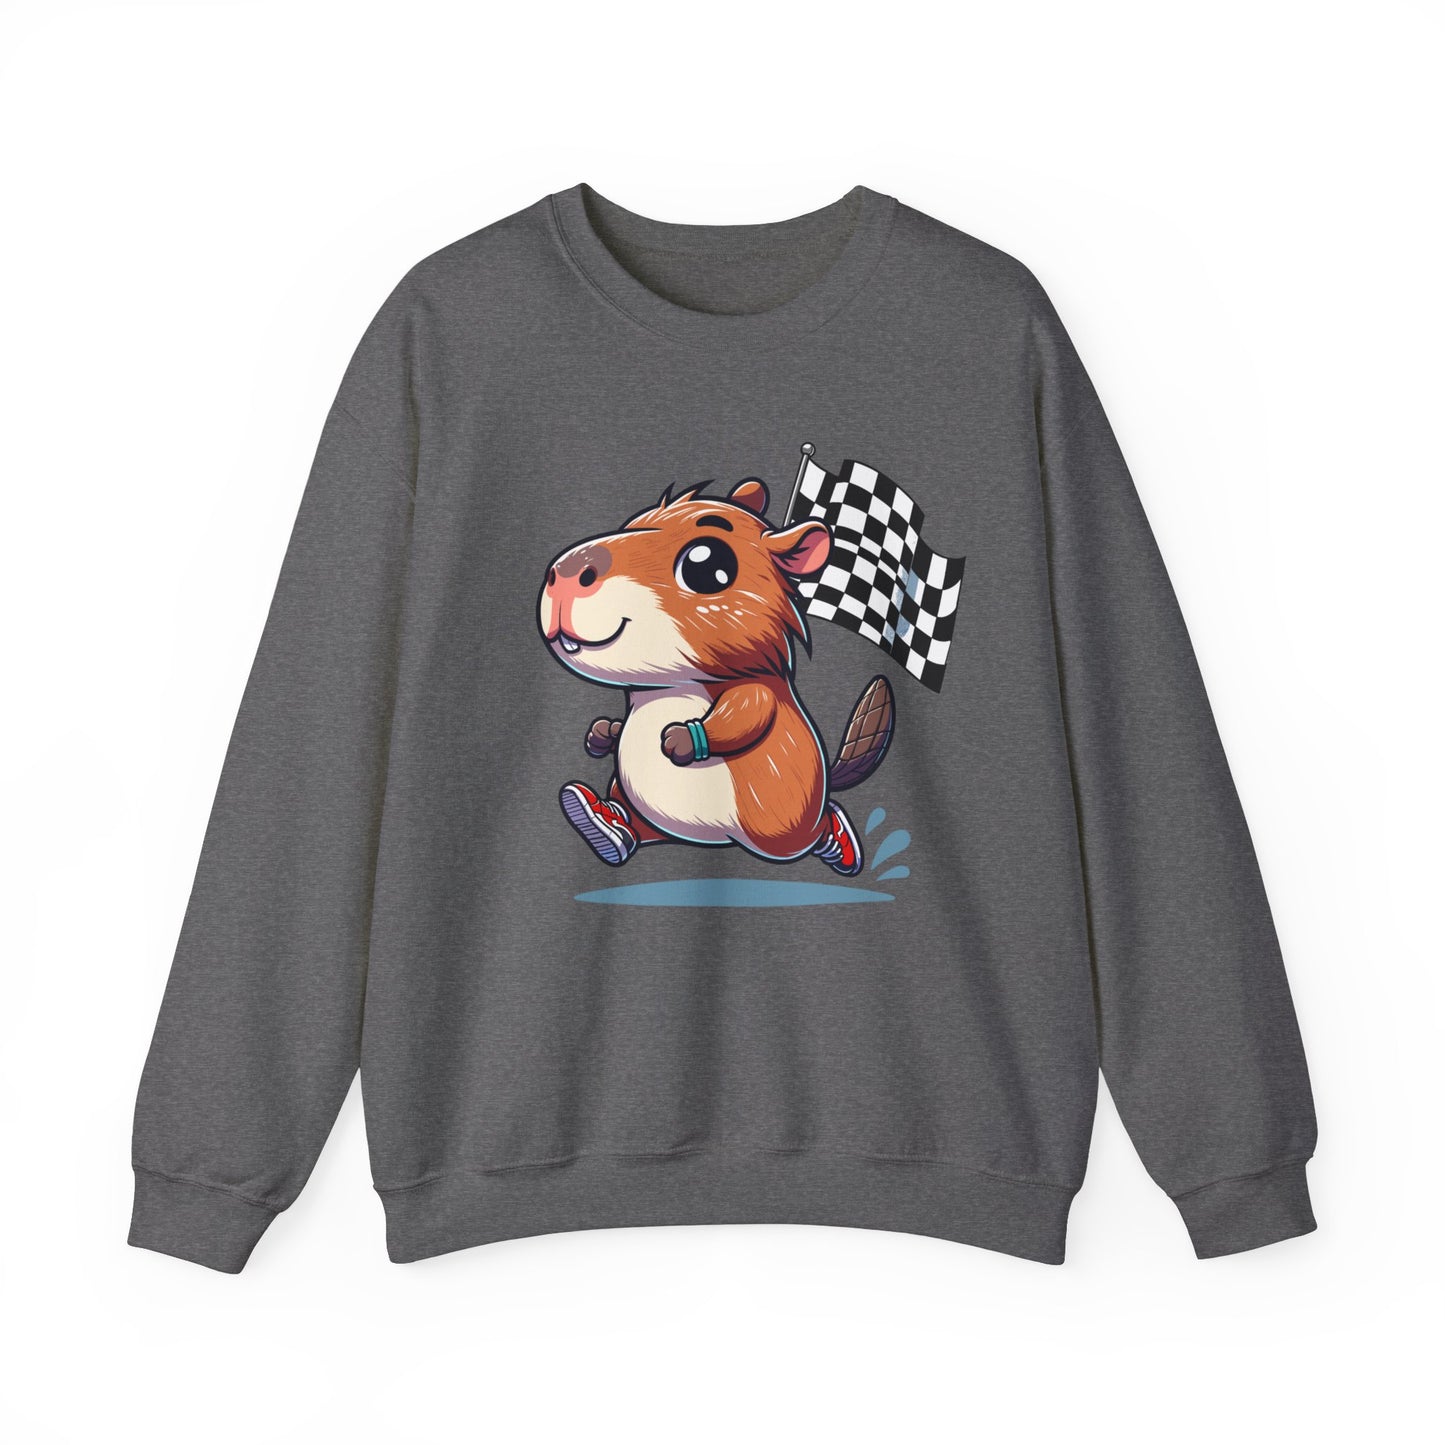 Capybara Never Did Come In Last Crewneck Sweatshirt